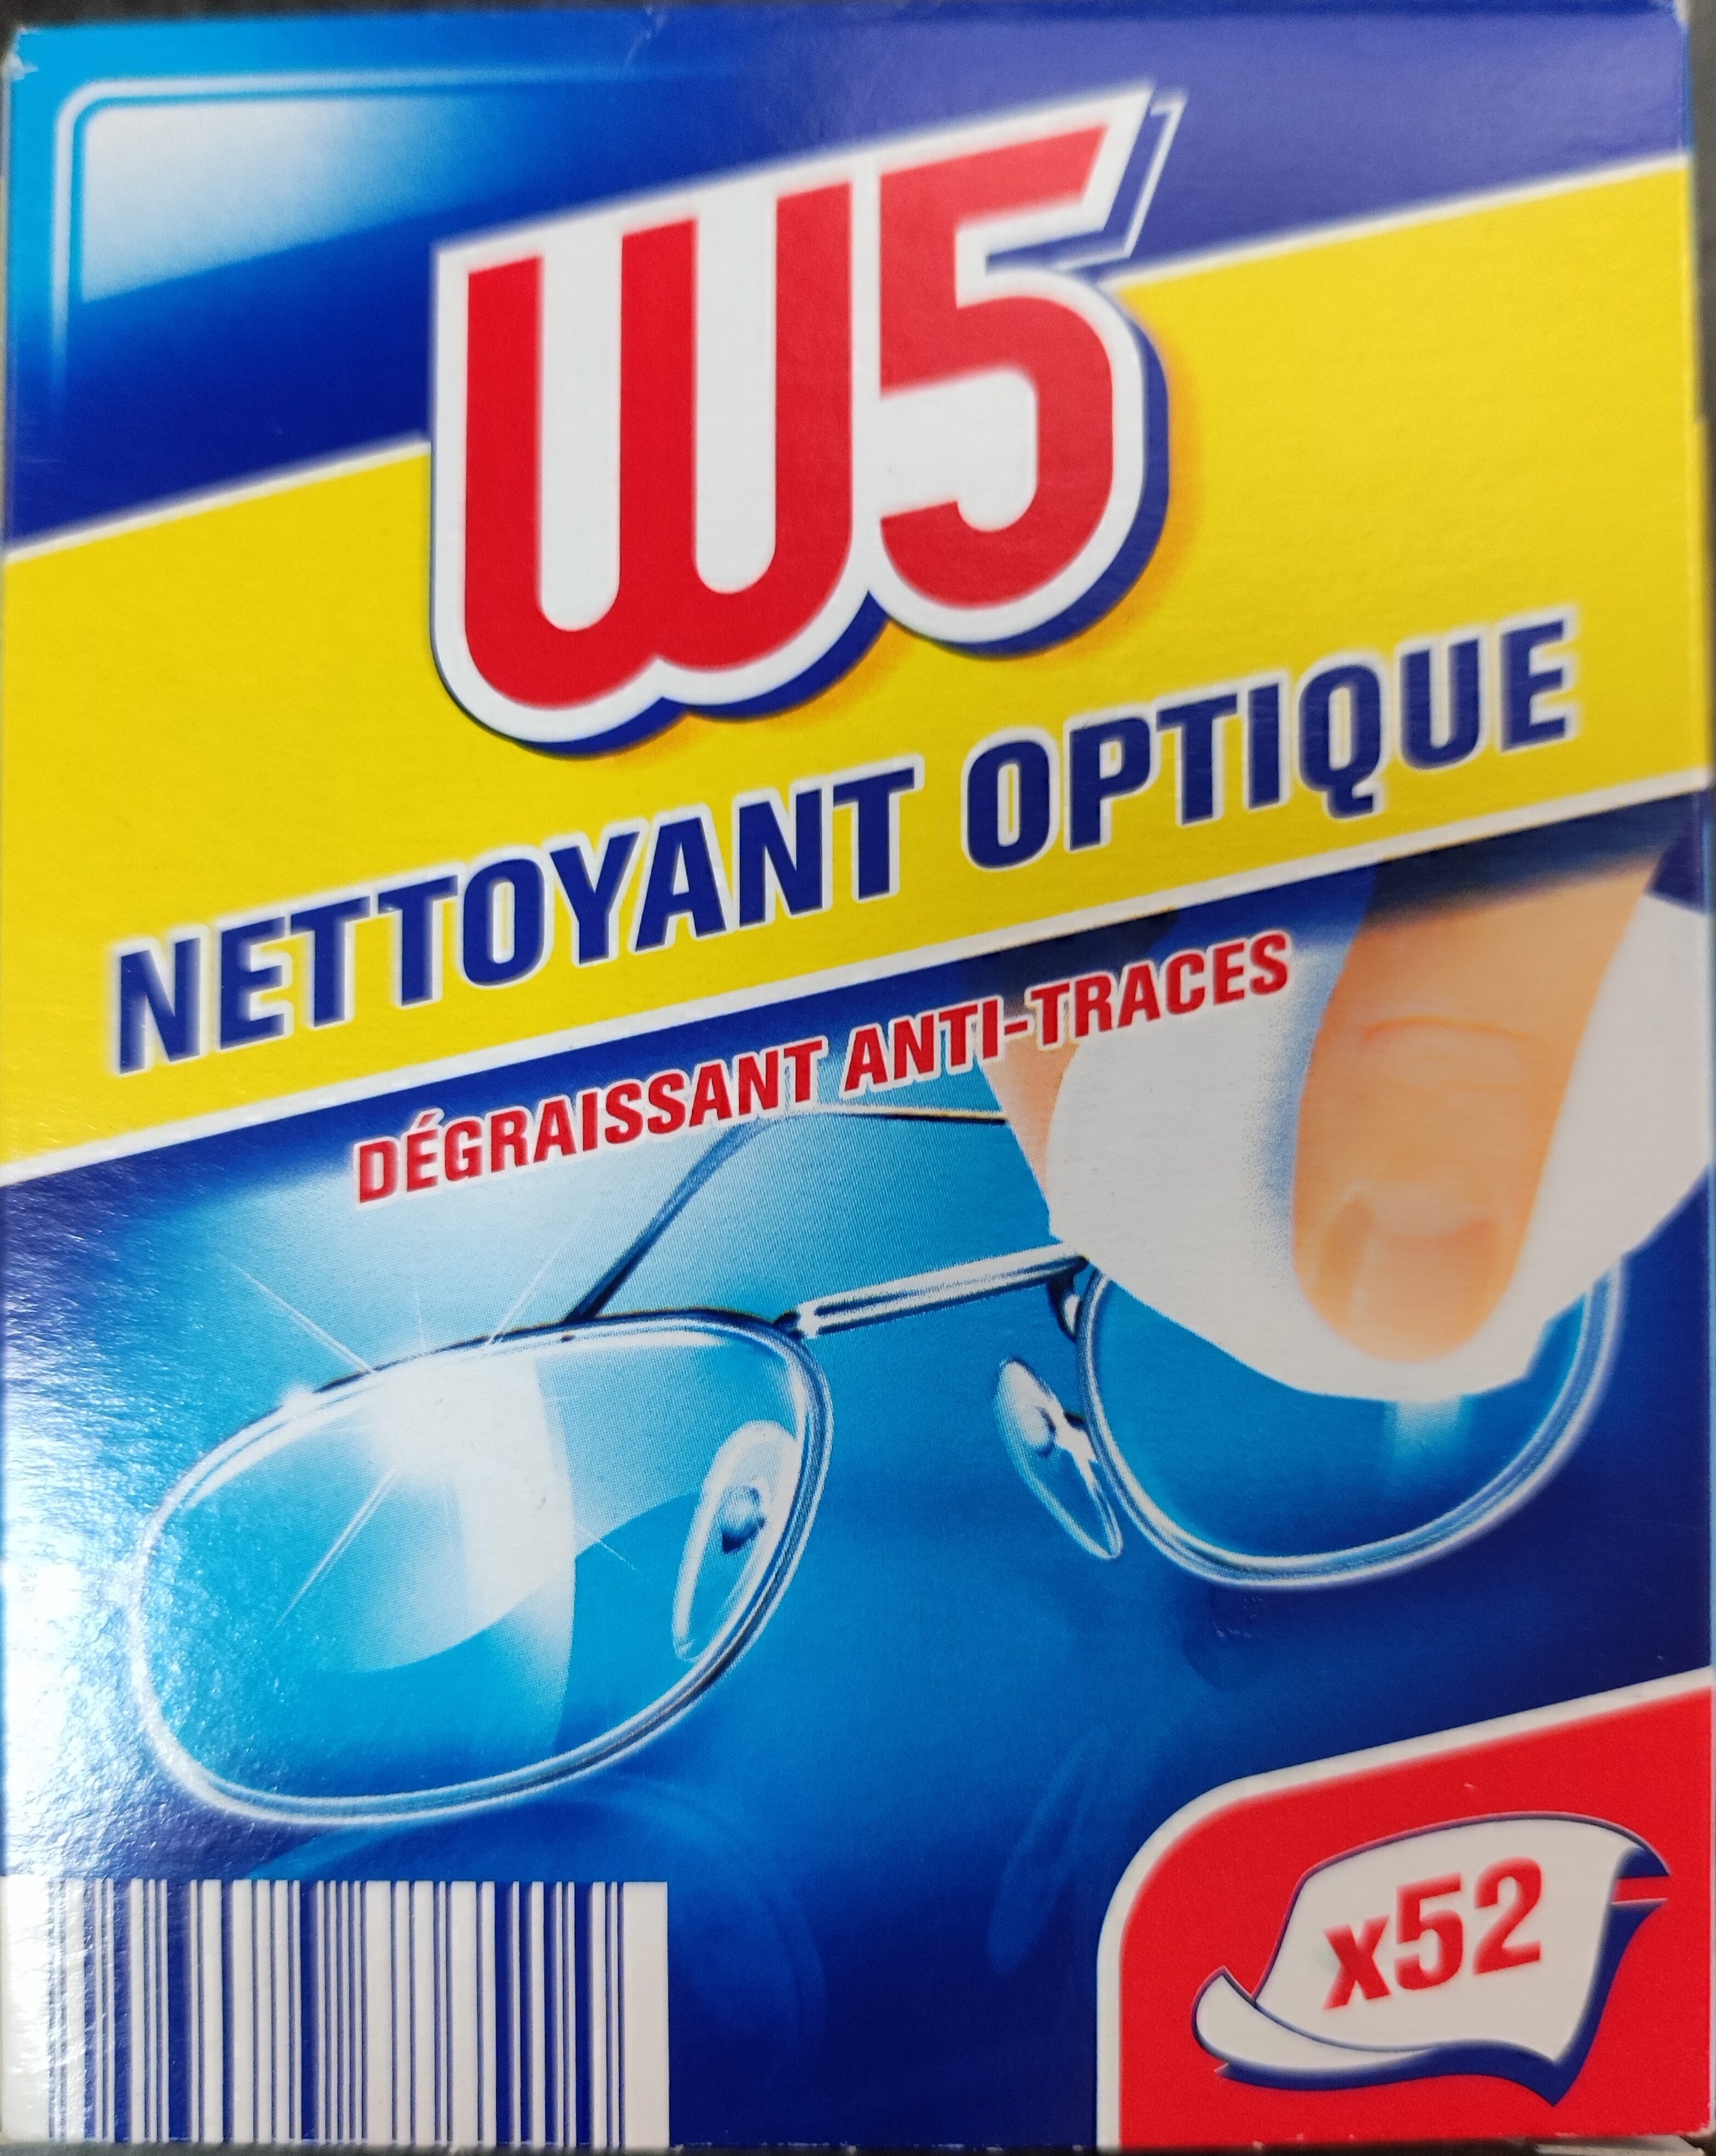 Nettoyant Optique - Product - fr